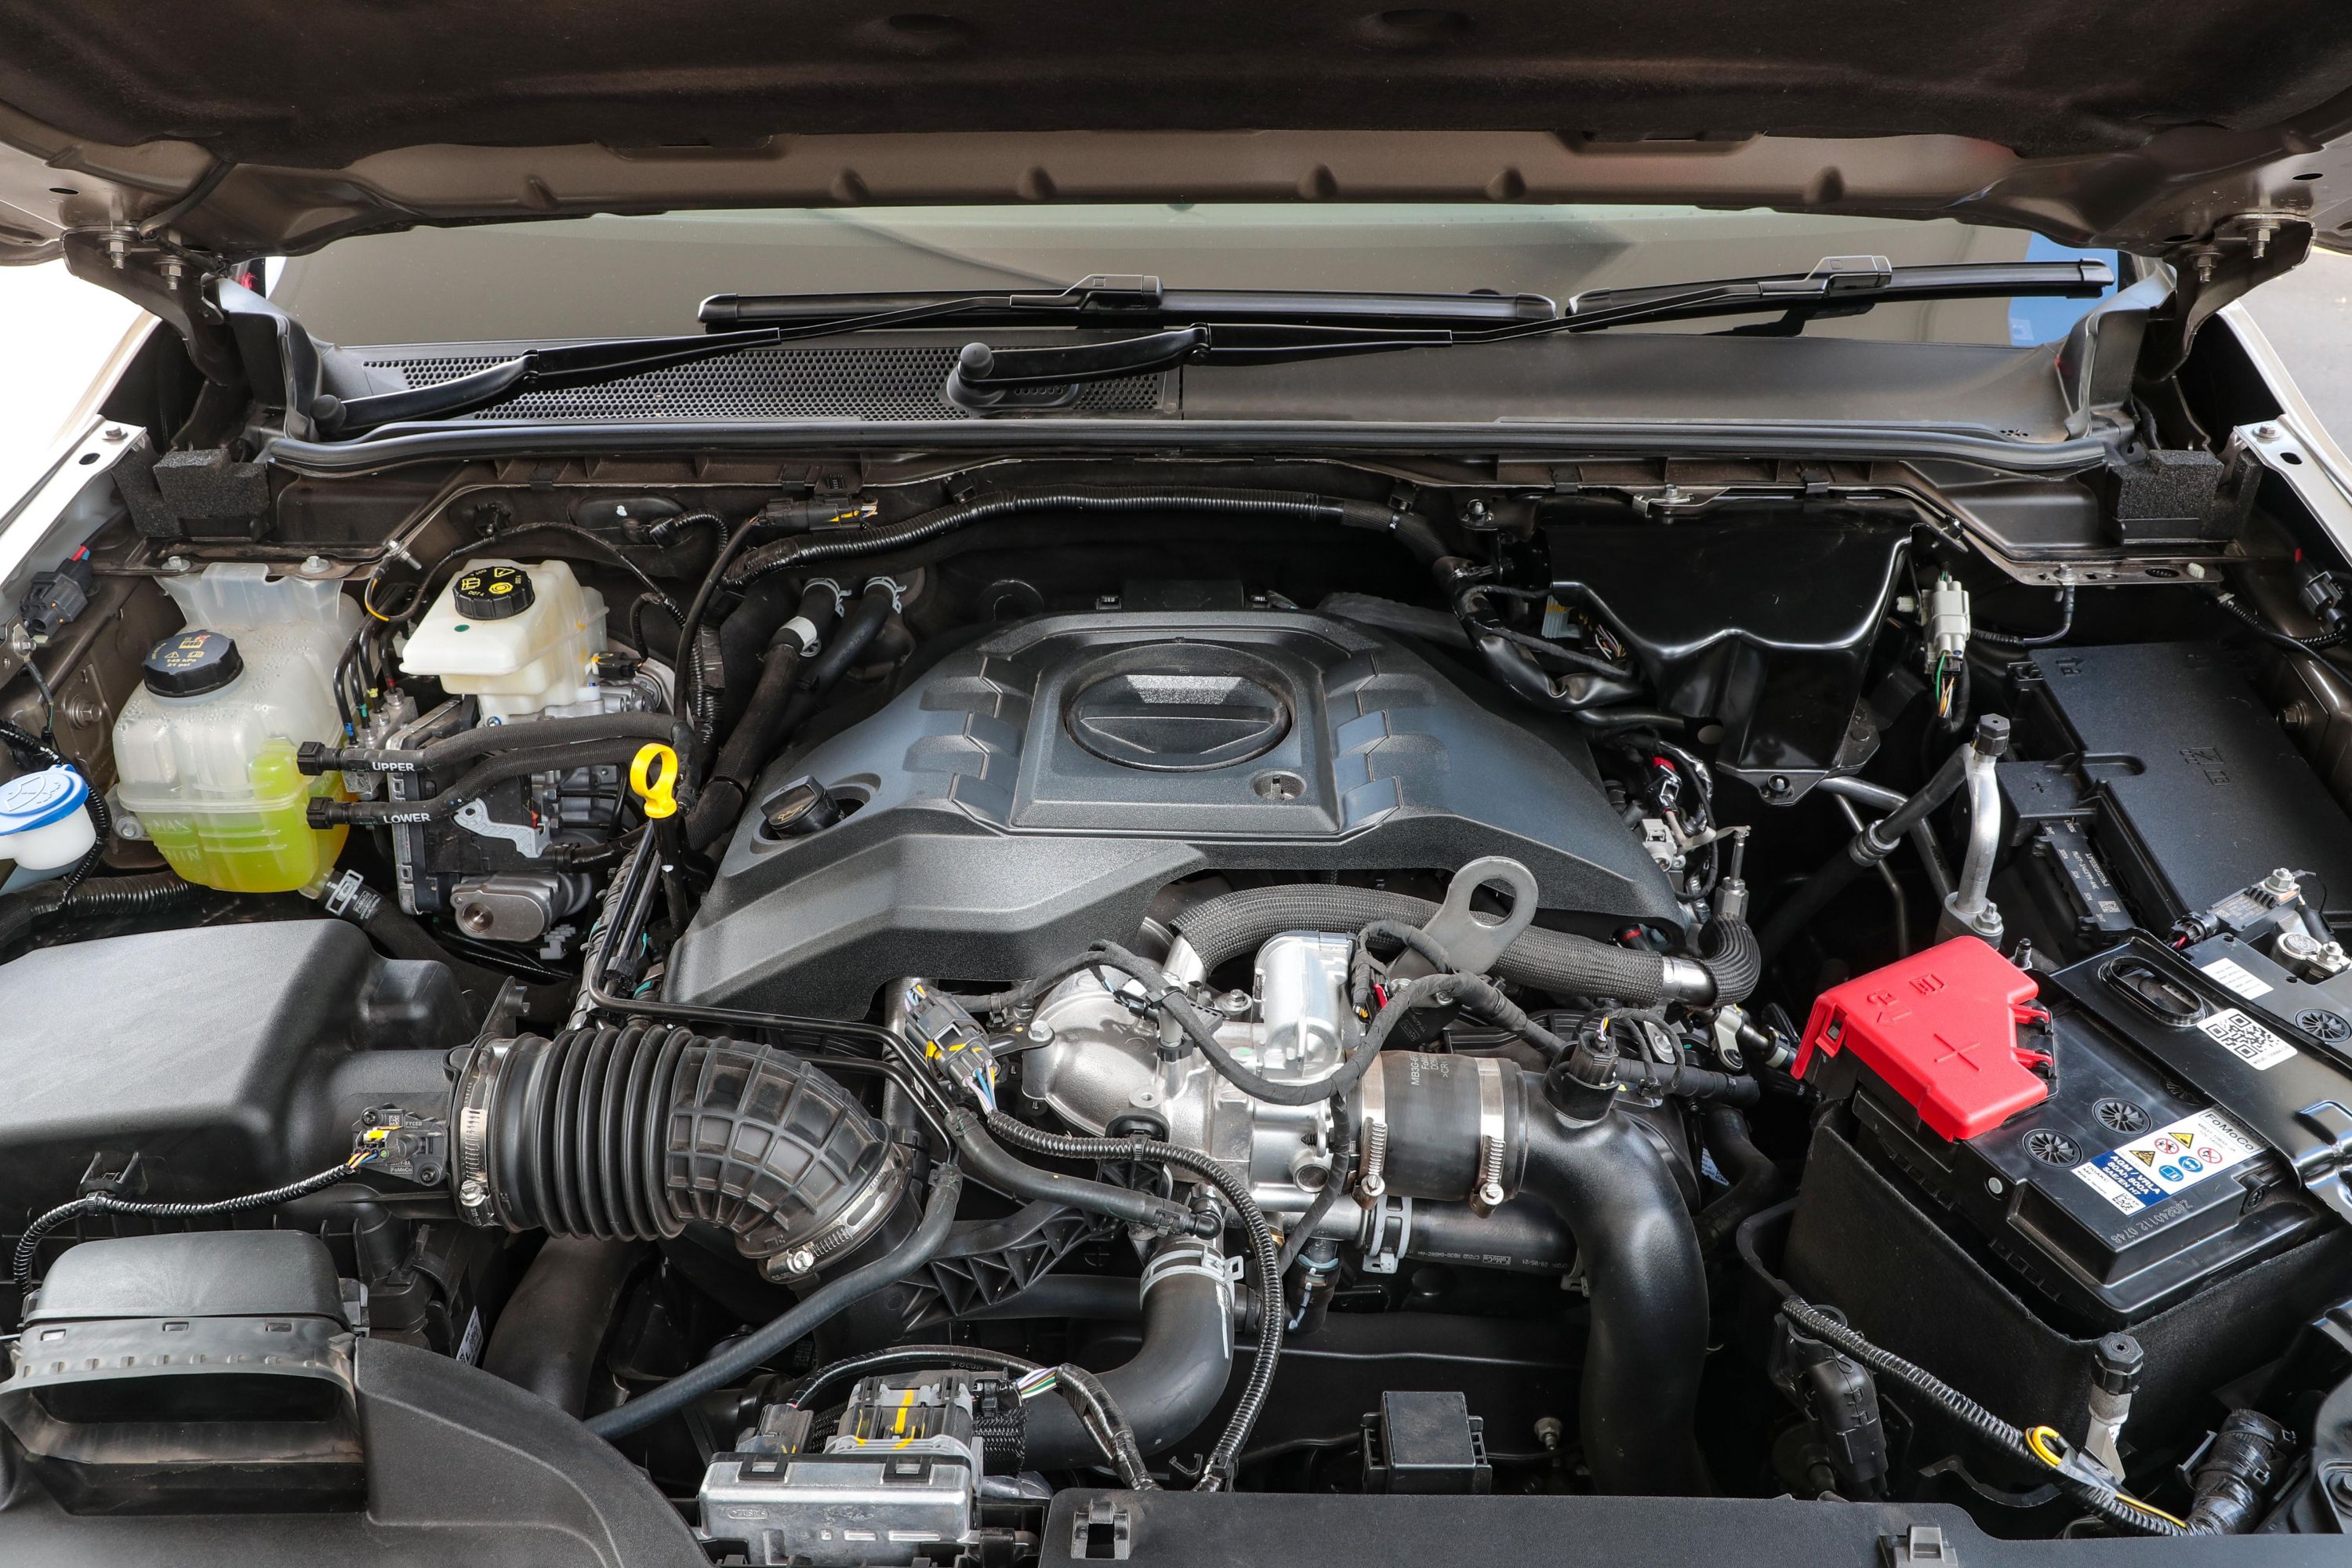 2023 Volkswagen Amarok engines: Petrol and diesel options coming